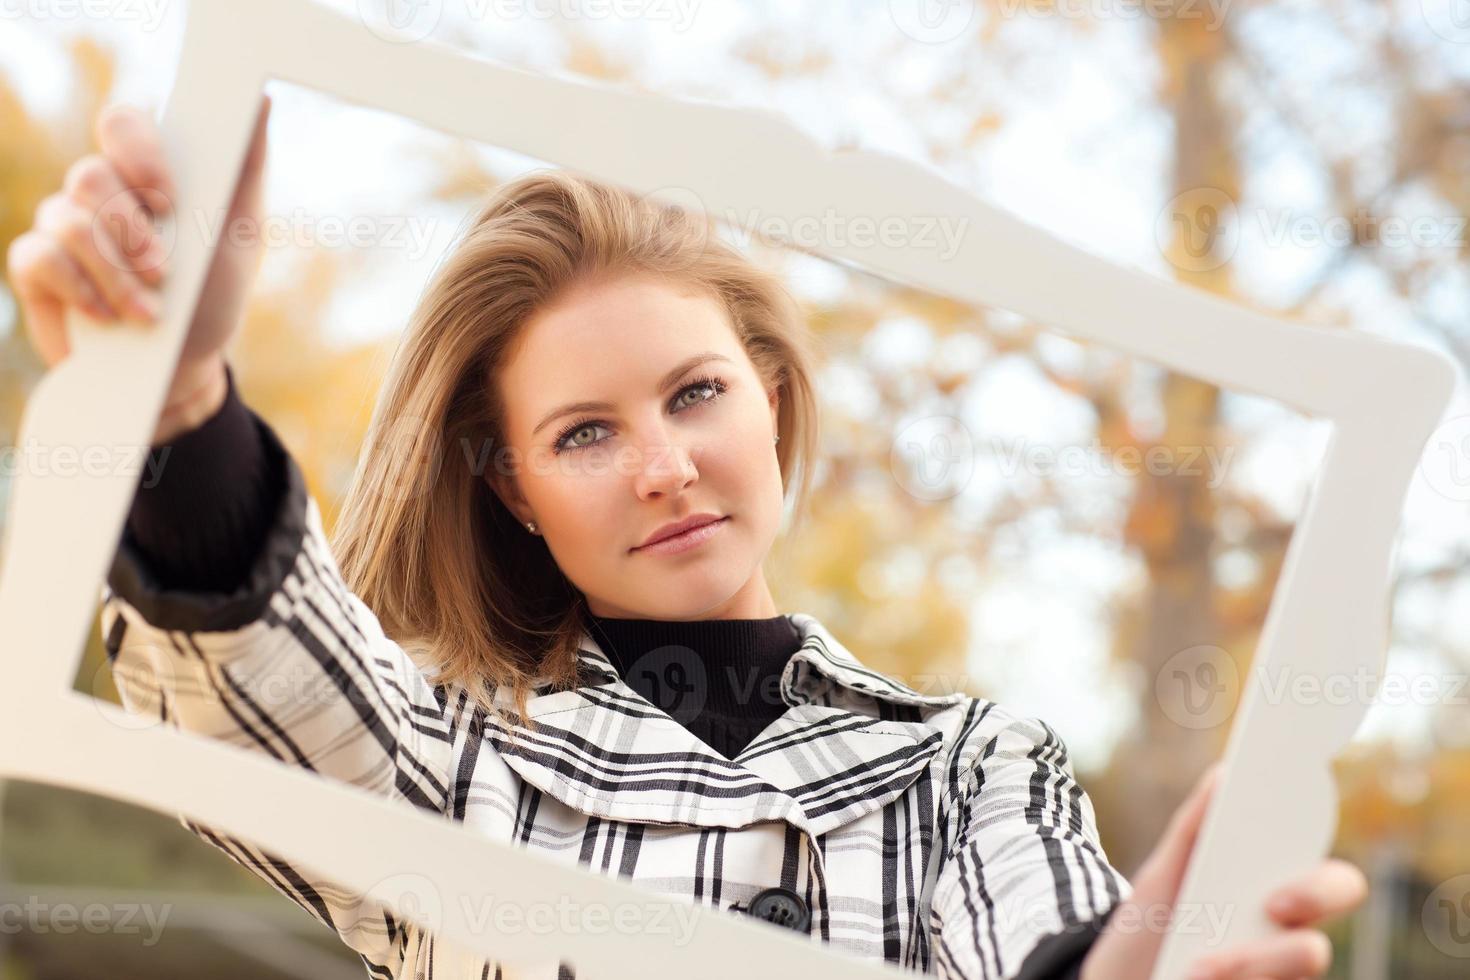 bastante, mujer joven, sonriente, en el parque, con, marco de imagen foto